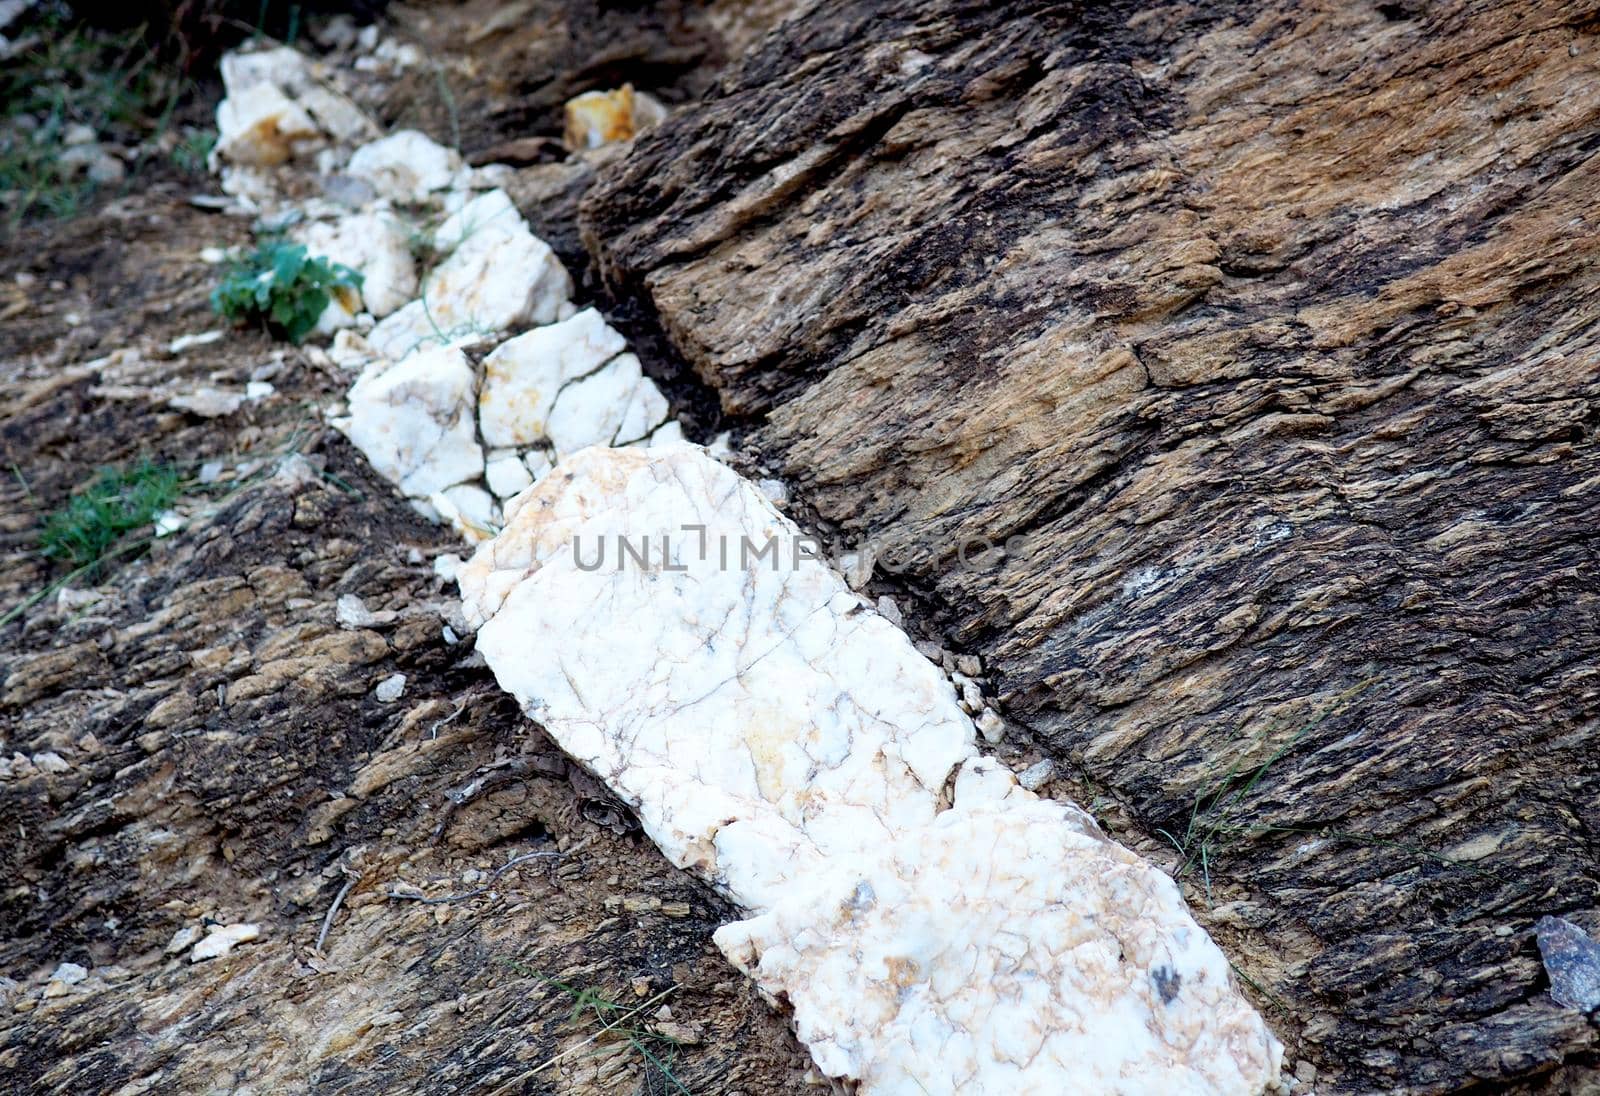 Seam of quartz in sedimentary sandstone rock